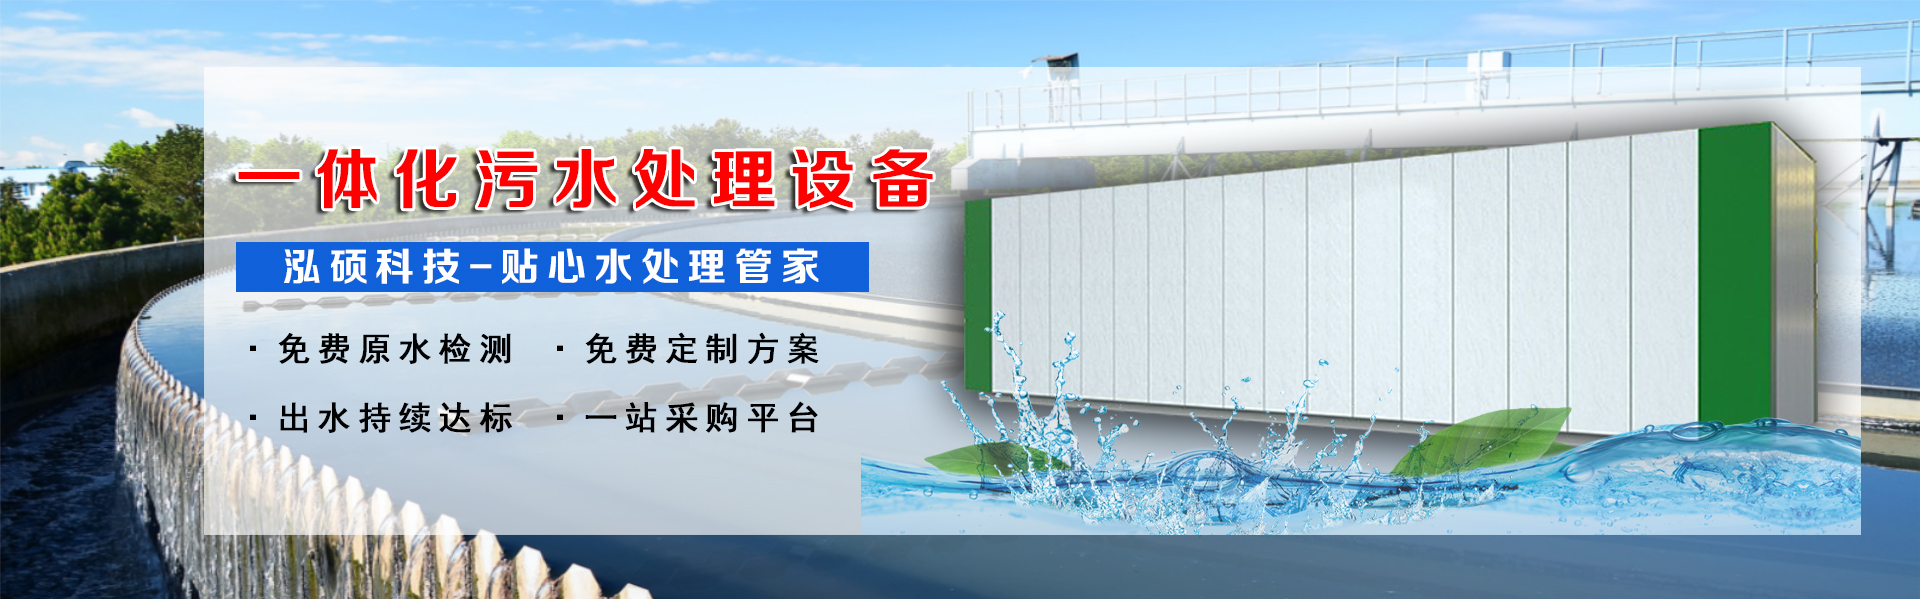 集装箱式污水处理设备